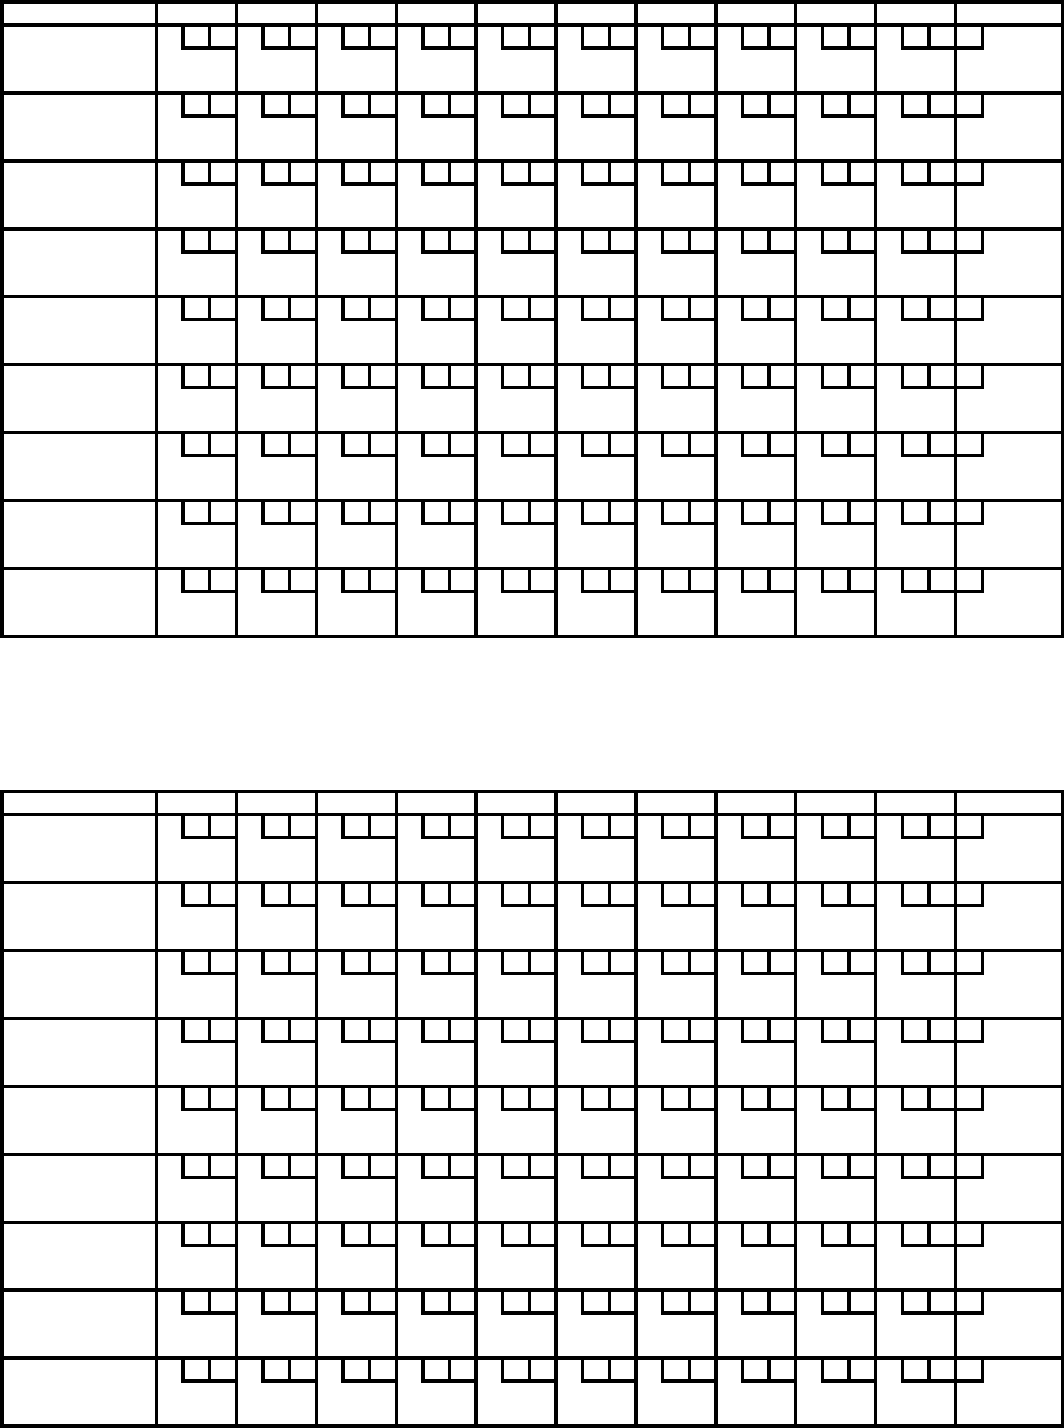 Bowling Score Sheet 3